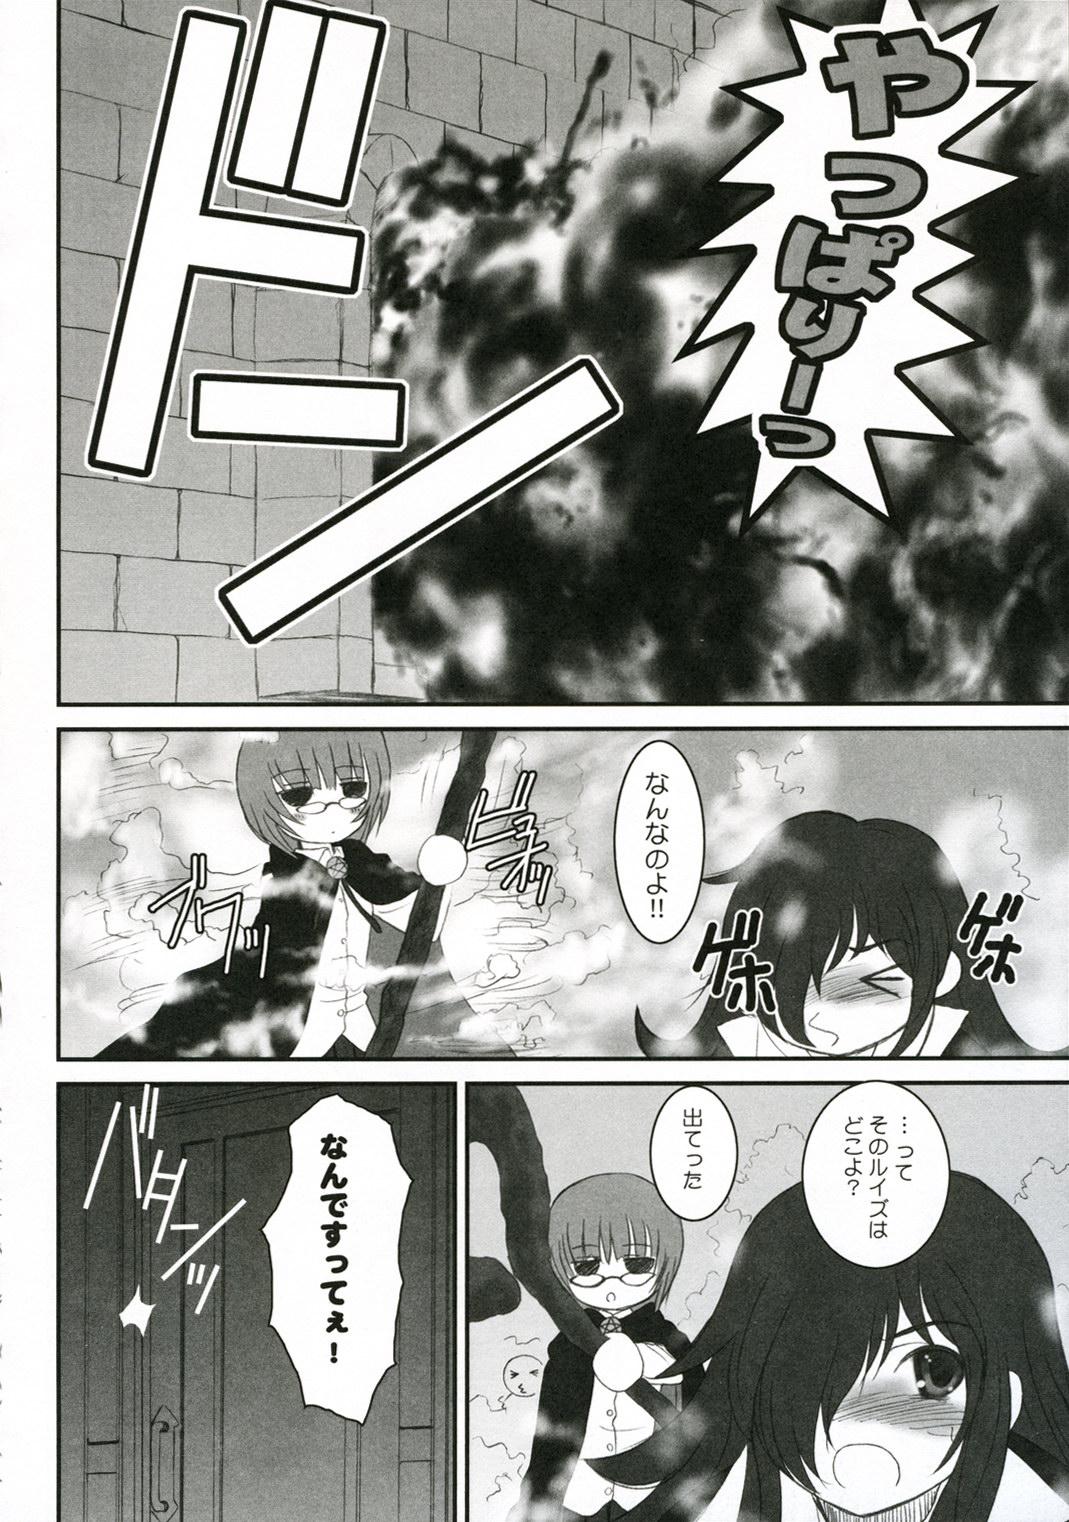 Punish 037 - Zero no tsukaima Good - Page 6